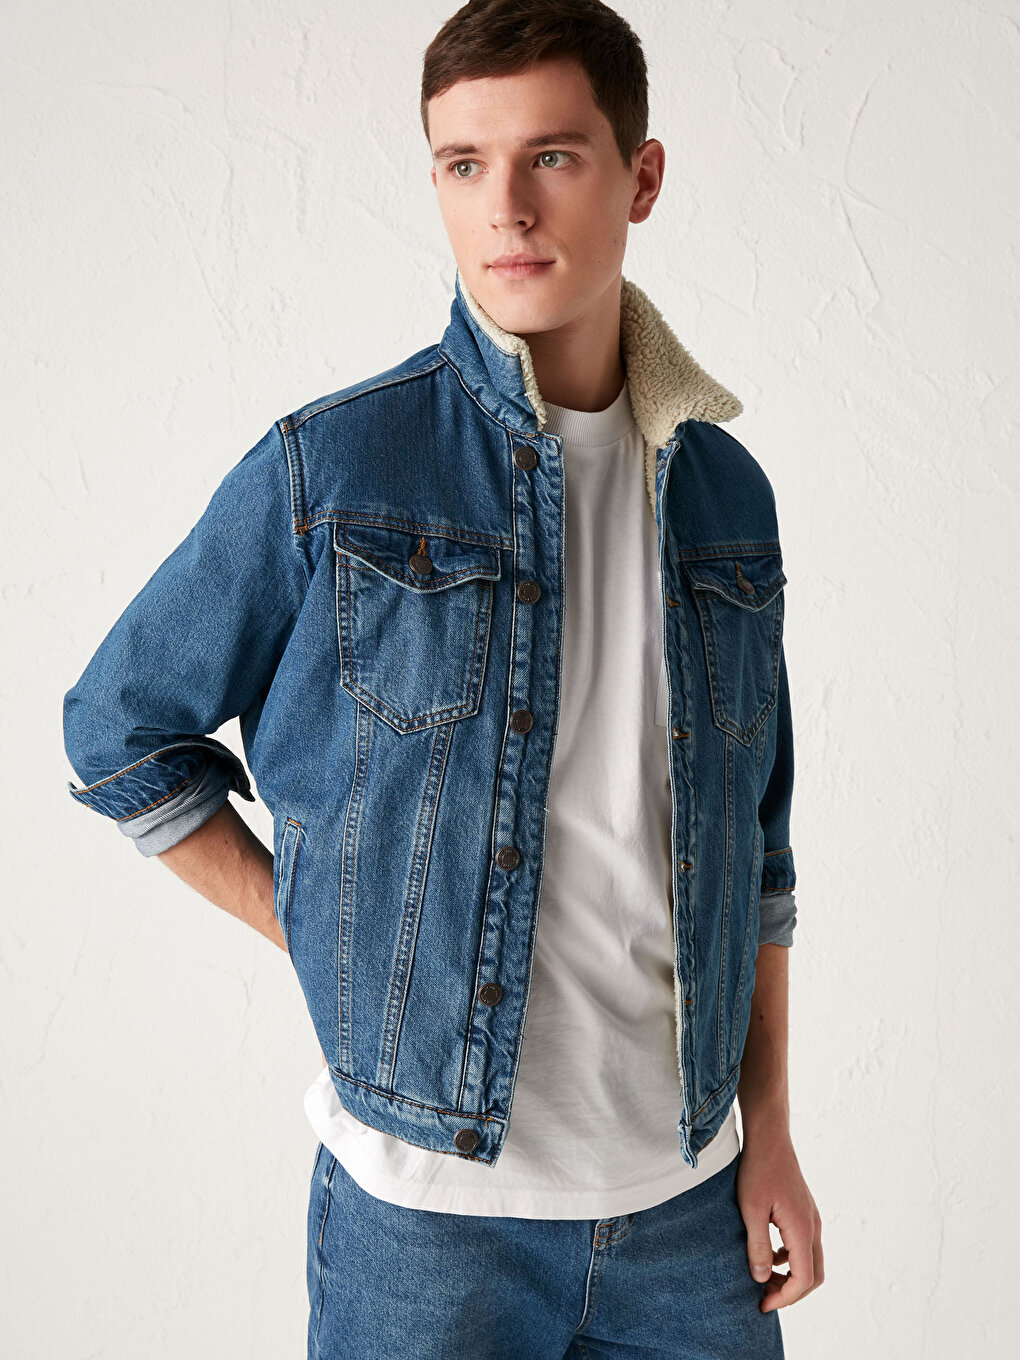 Men Winter Faux Fur Collar Lining Denim Jeans Jacket Denim Outwear Coat  S-5XL | eBay